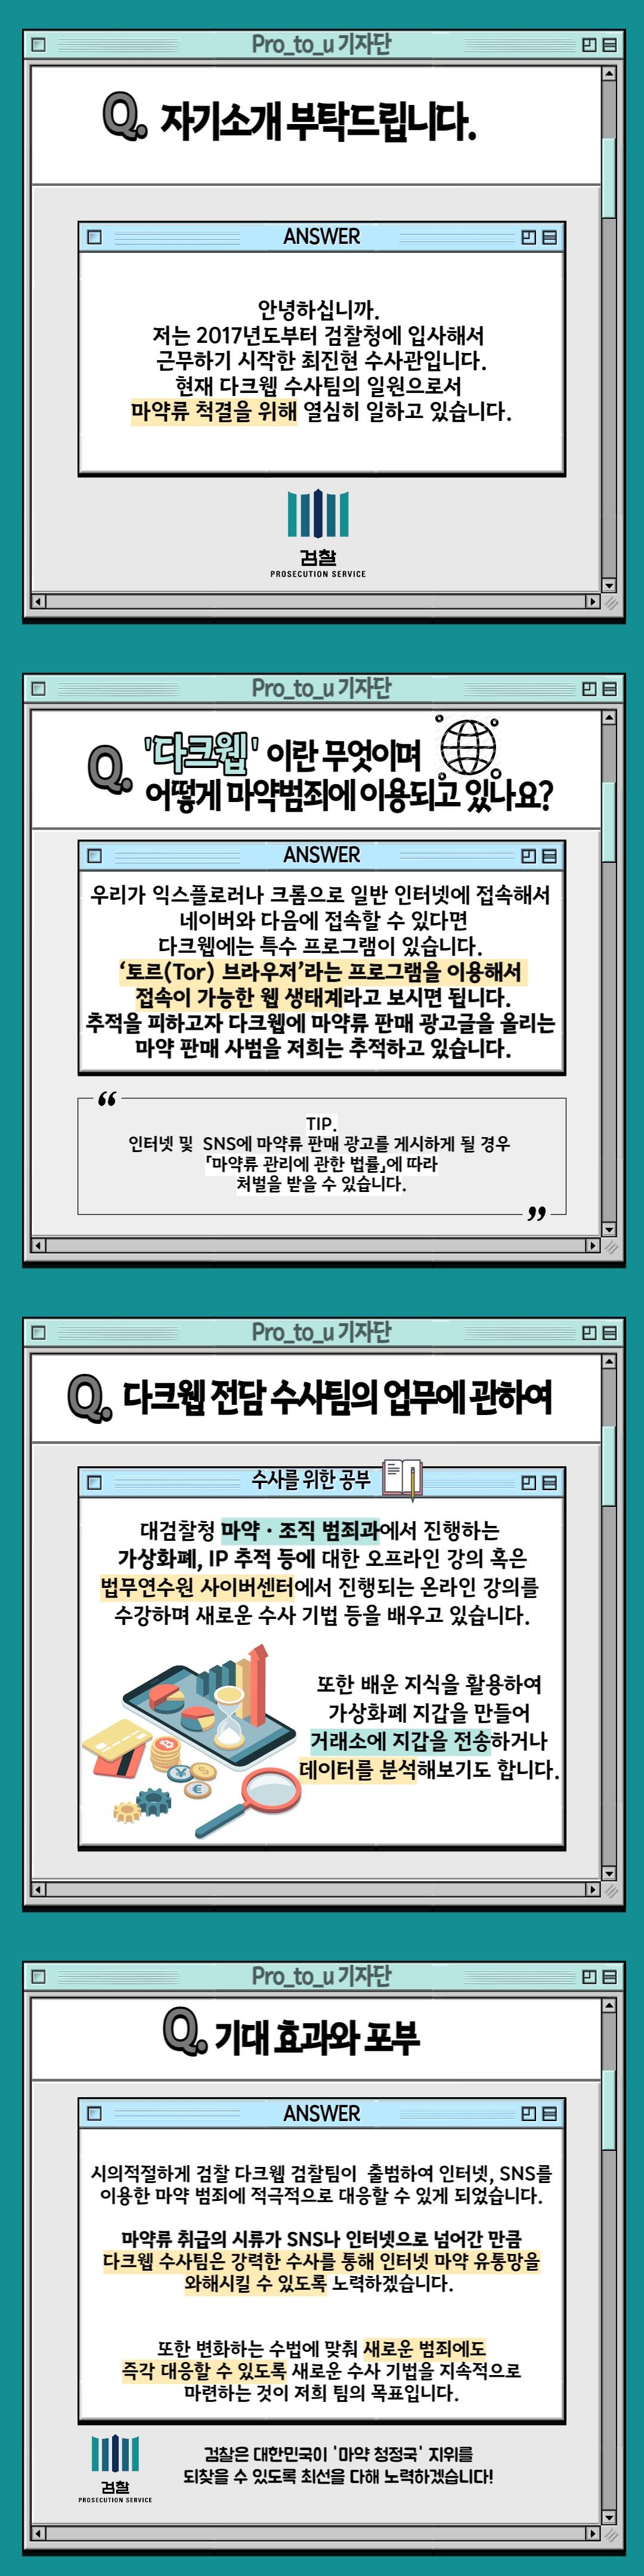 「마약범죄 특별수사팀」 다크웹 전담수사팀 2번째